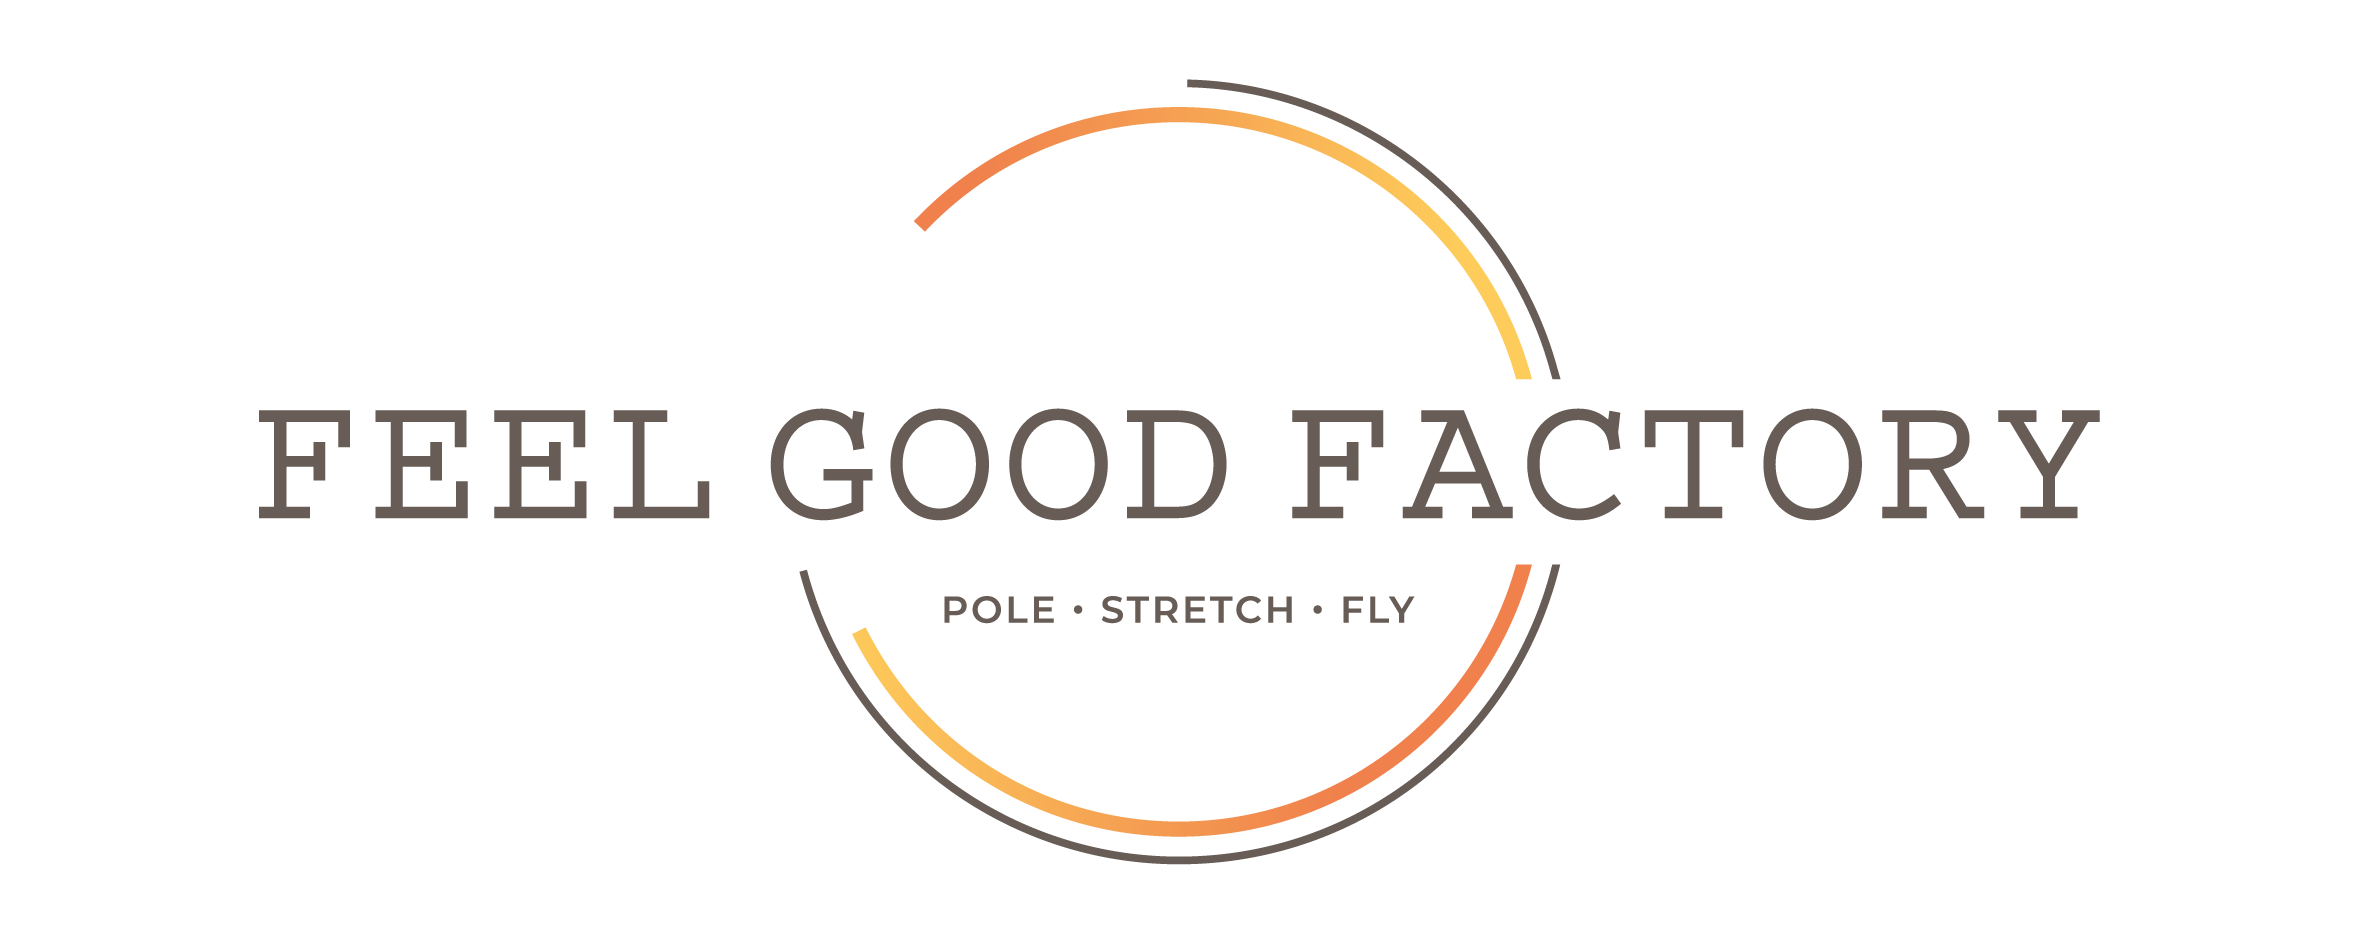 Feel Good Factoy Hamburg - Pole Stretch Fly